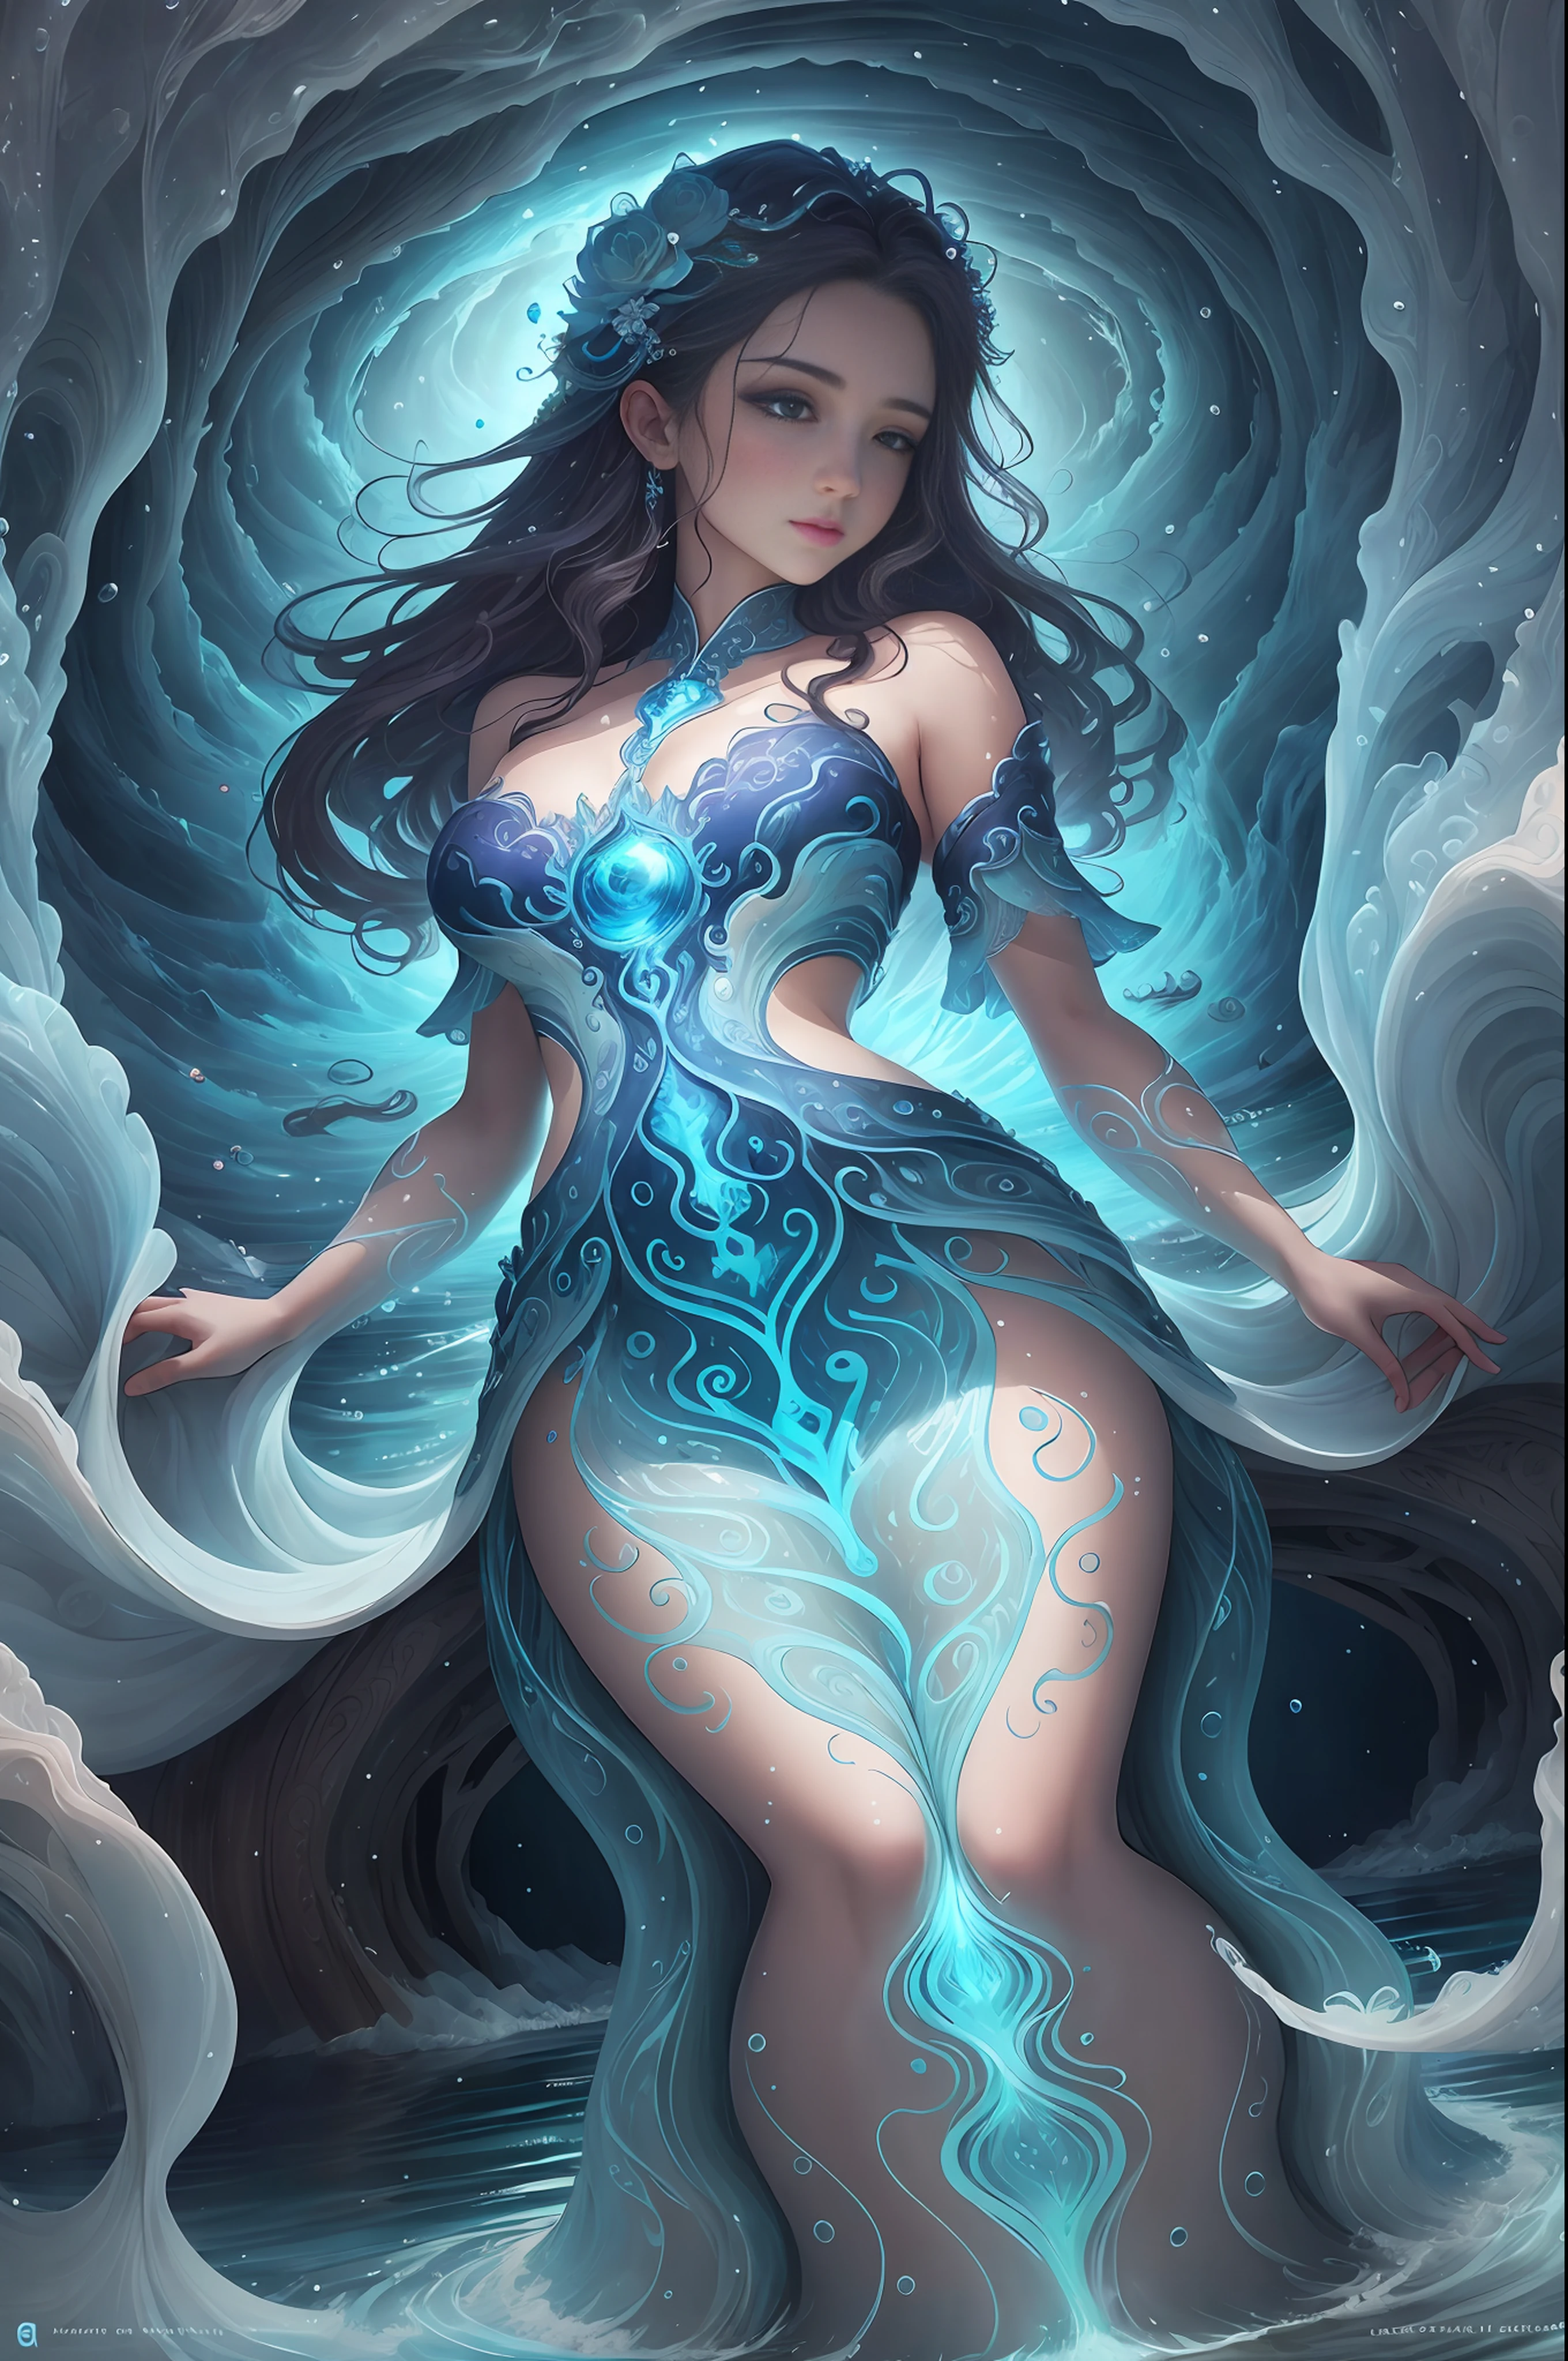 穿着漂亮服装的女孩形态的水精灵, 源于自然河流, 湖泊和海洋, 生活在水流和波浪中, 水的守护者它是纯净水的象征, 生命之源, 也是净化和重生的象征.

与自然和谐相处的色调, 比如蓝色, 浅蓝色, 透明.

形状像水流或波浪, 就像一个生活在美丽水边的仙女.

它可以根据水流改变外观.

背景描绘的是美丽的河流, 湖泊和海洋 希望保护水资源，恢复清洁水质, detailed 漂亮的脸蛋 and eyes, 大屁股, 明亮的白色背景, 简单的背景, 从下面看, 杰作, 最好的质量, 最好的质量, 官方艺术, 美丽审美, 超现实的, 漂亮的脸蛋, 健康身材, 风格新颖独特, 美丽的头发, 光滑的皮肤, 娃娃脸